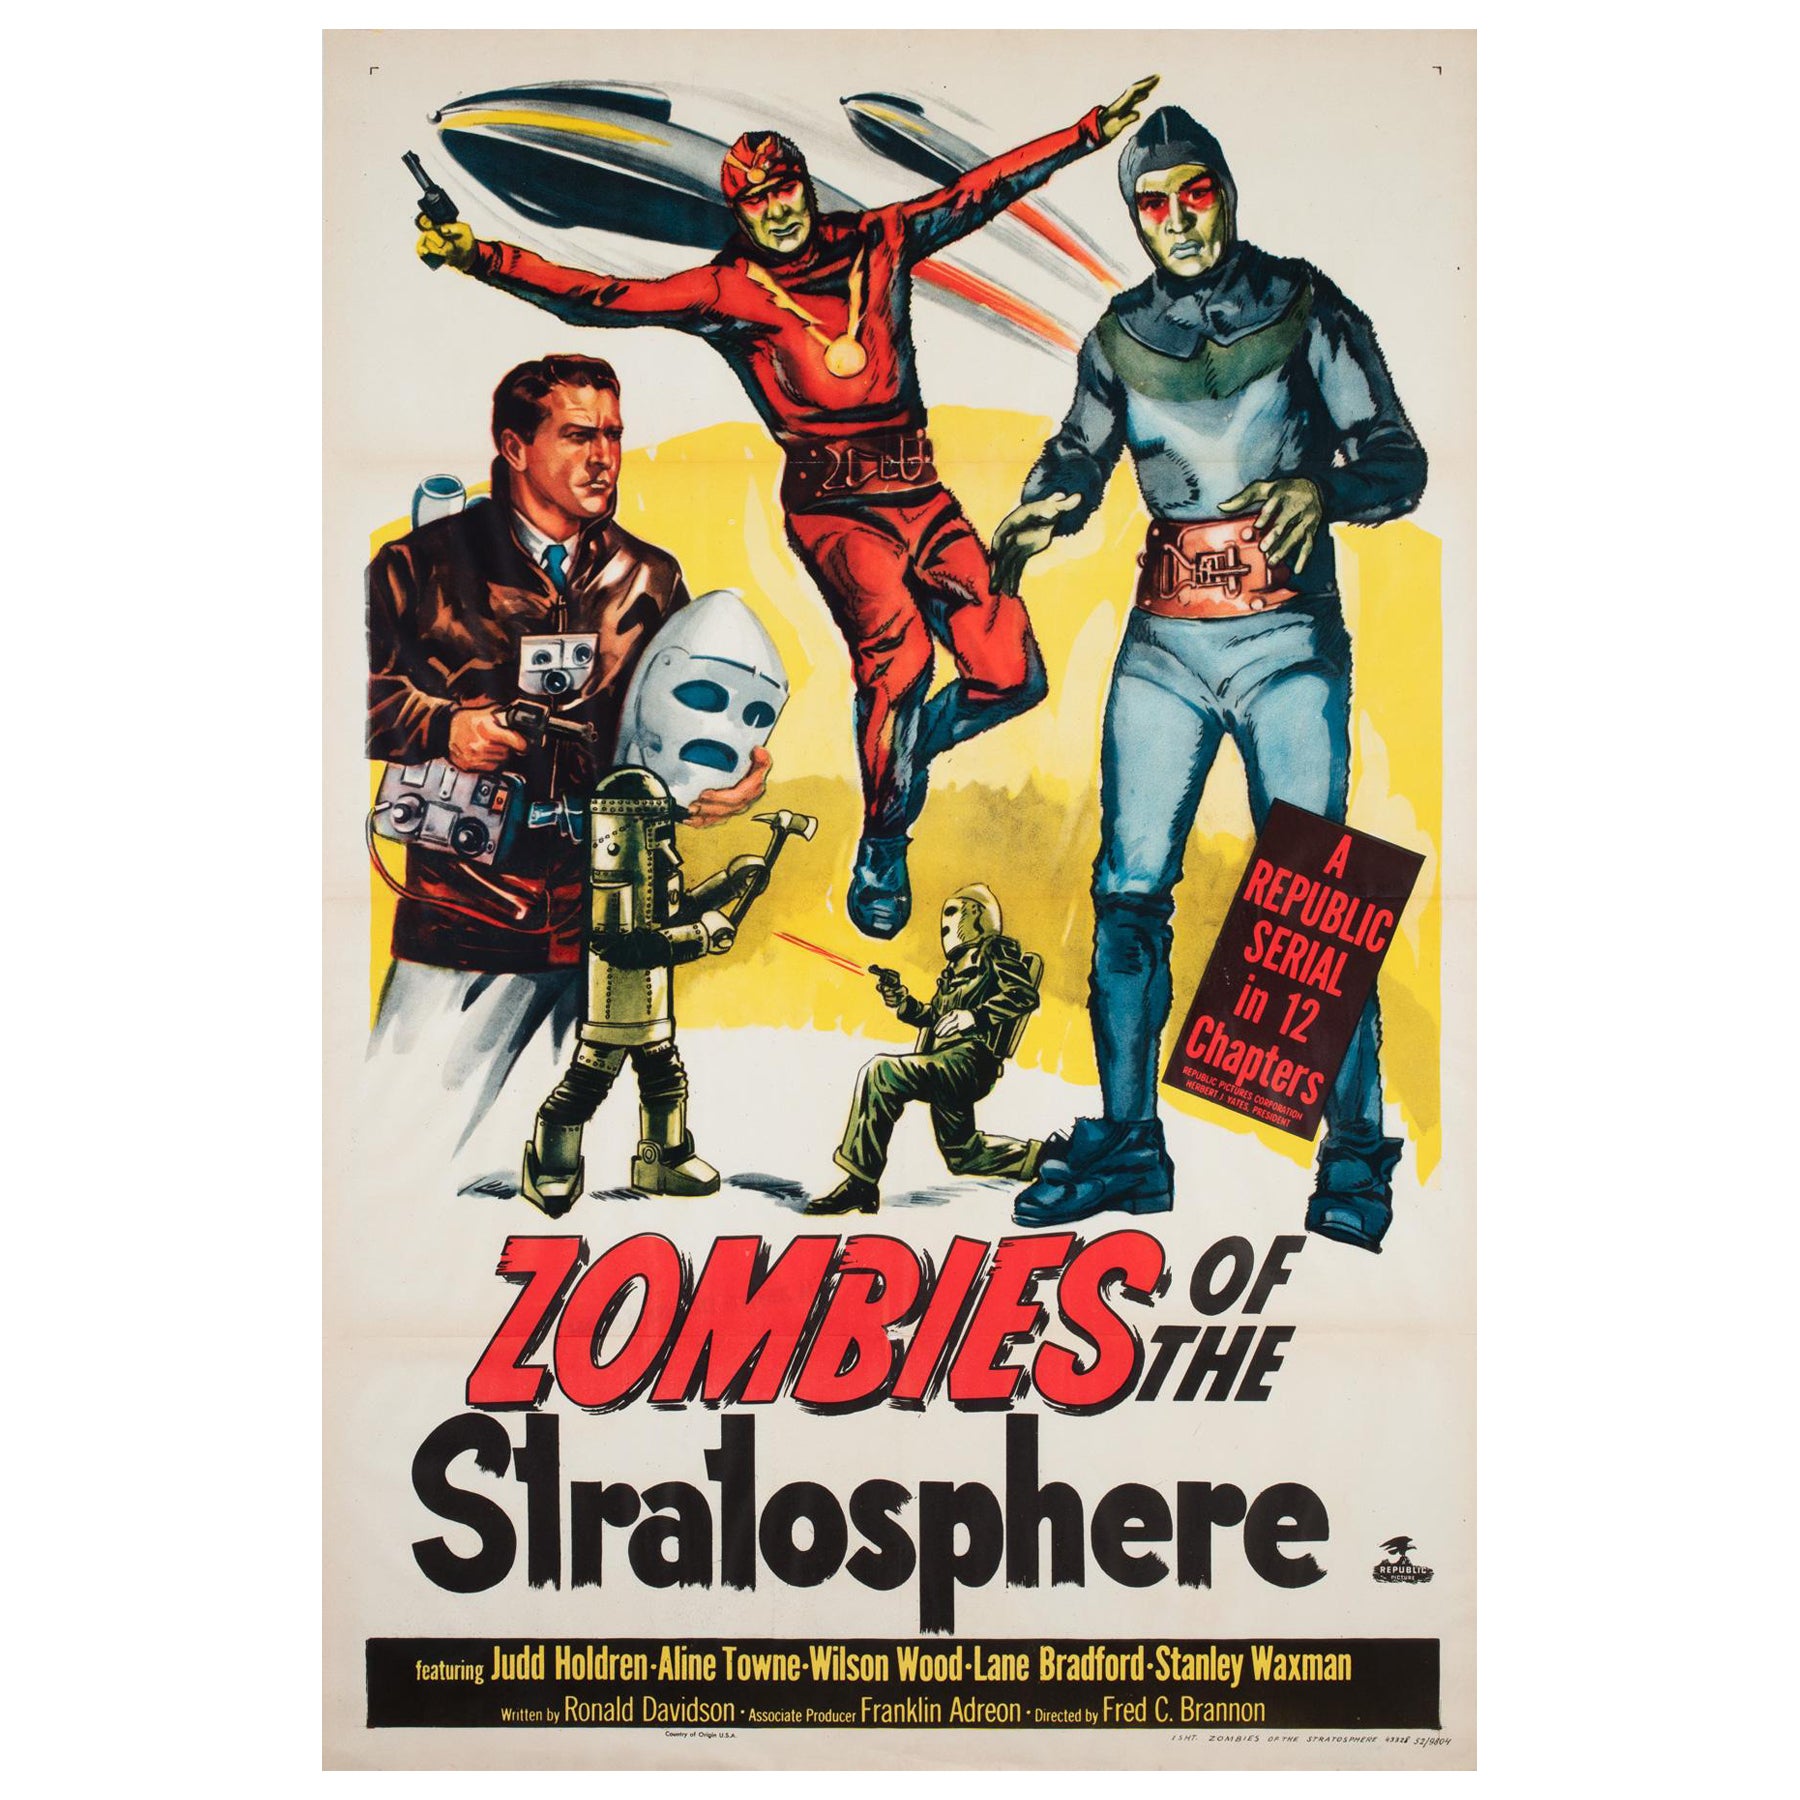 ""Les zombies de la stratosphère"" Affiche de film américain, 1952